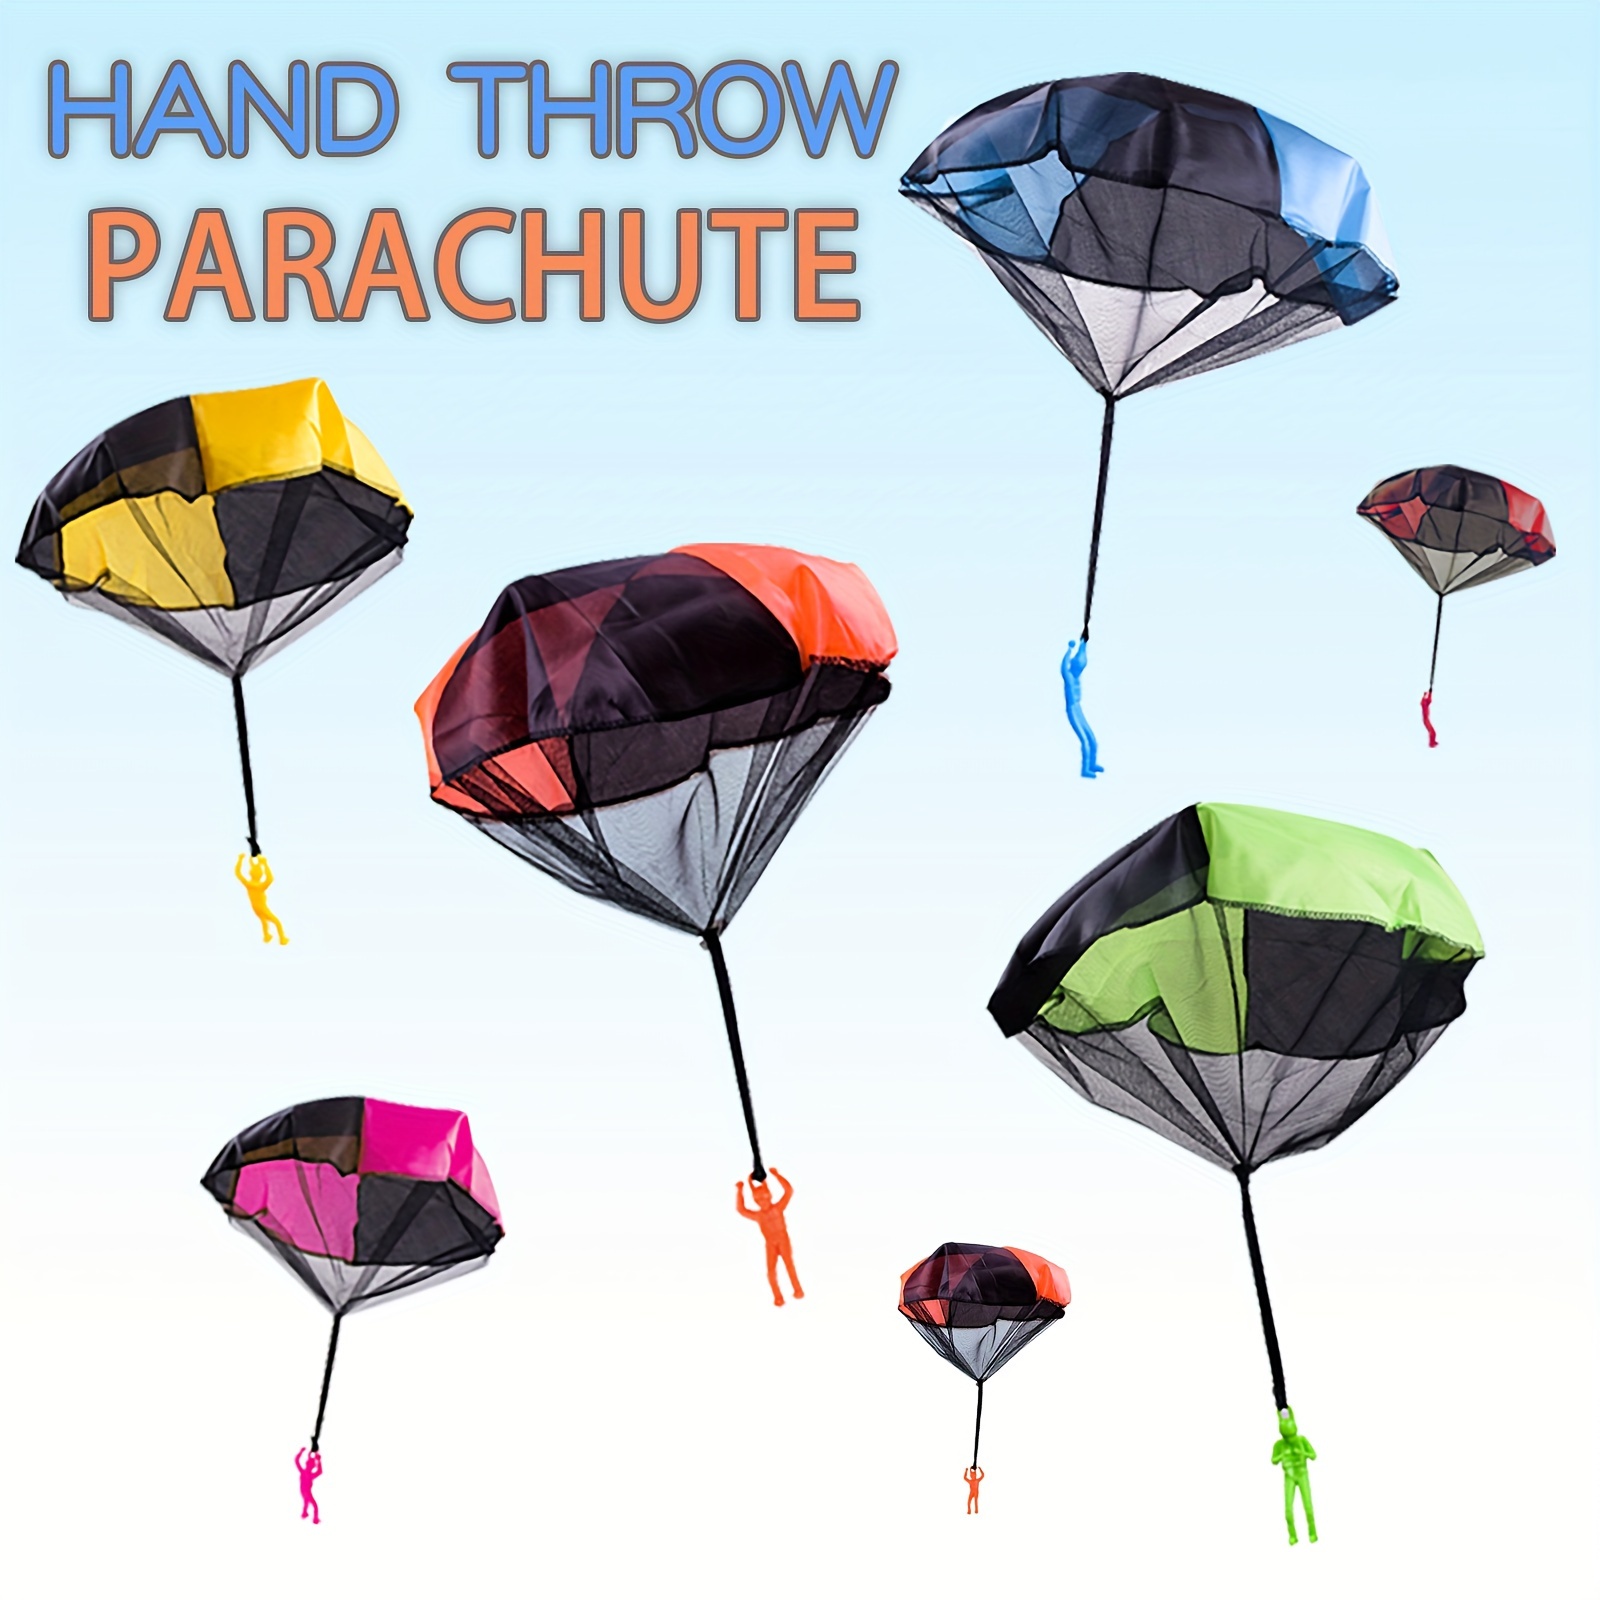 Parachute Jouet, Jouet De Parachute Pour Enfants, Main Lancer